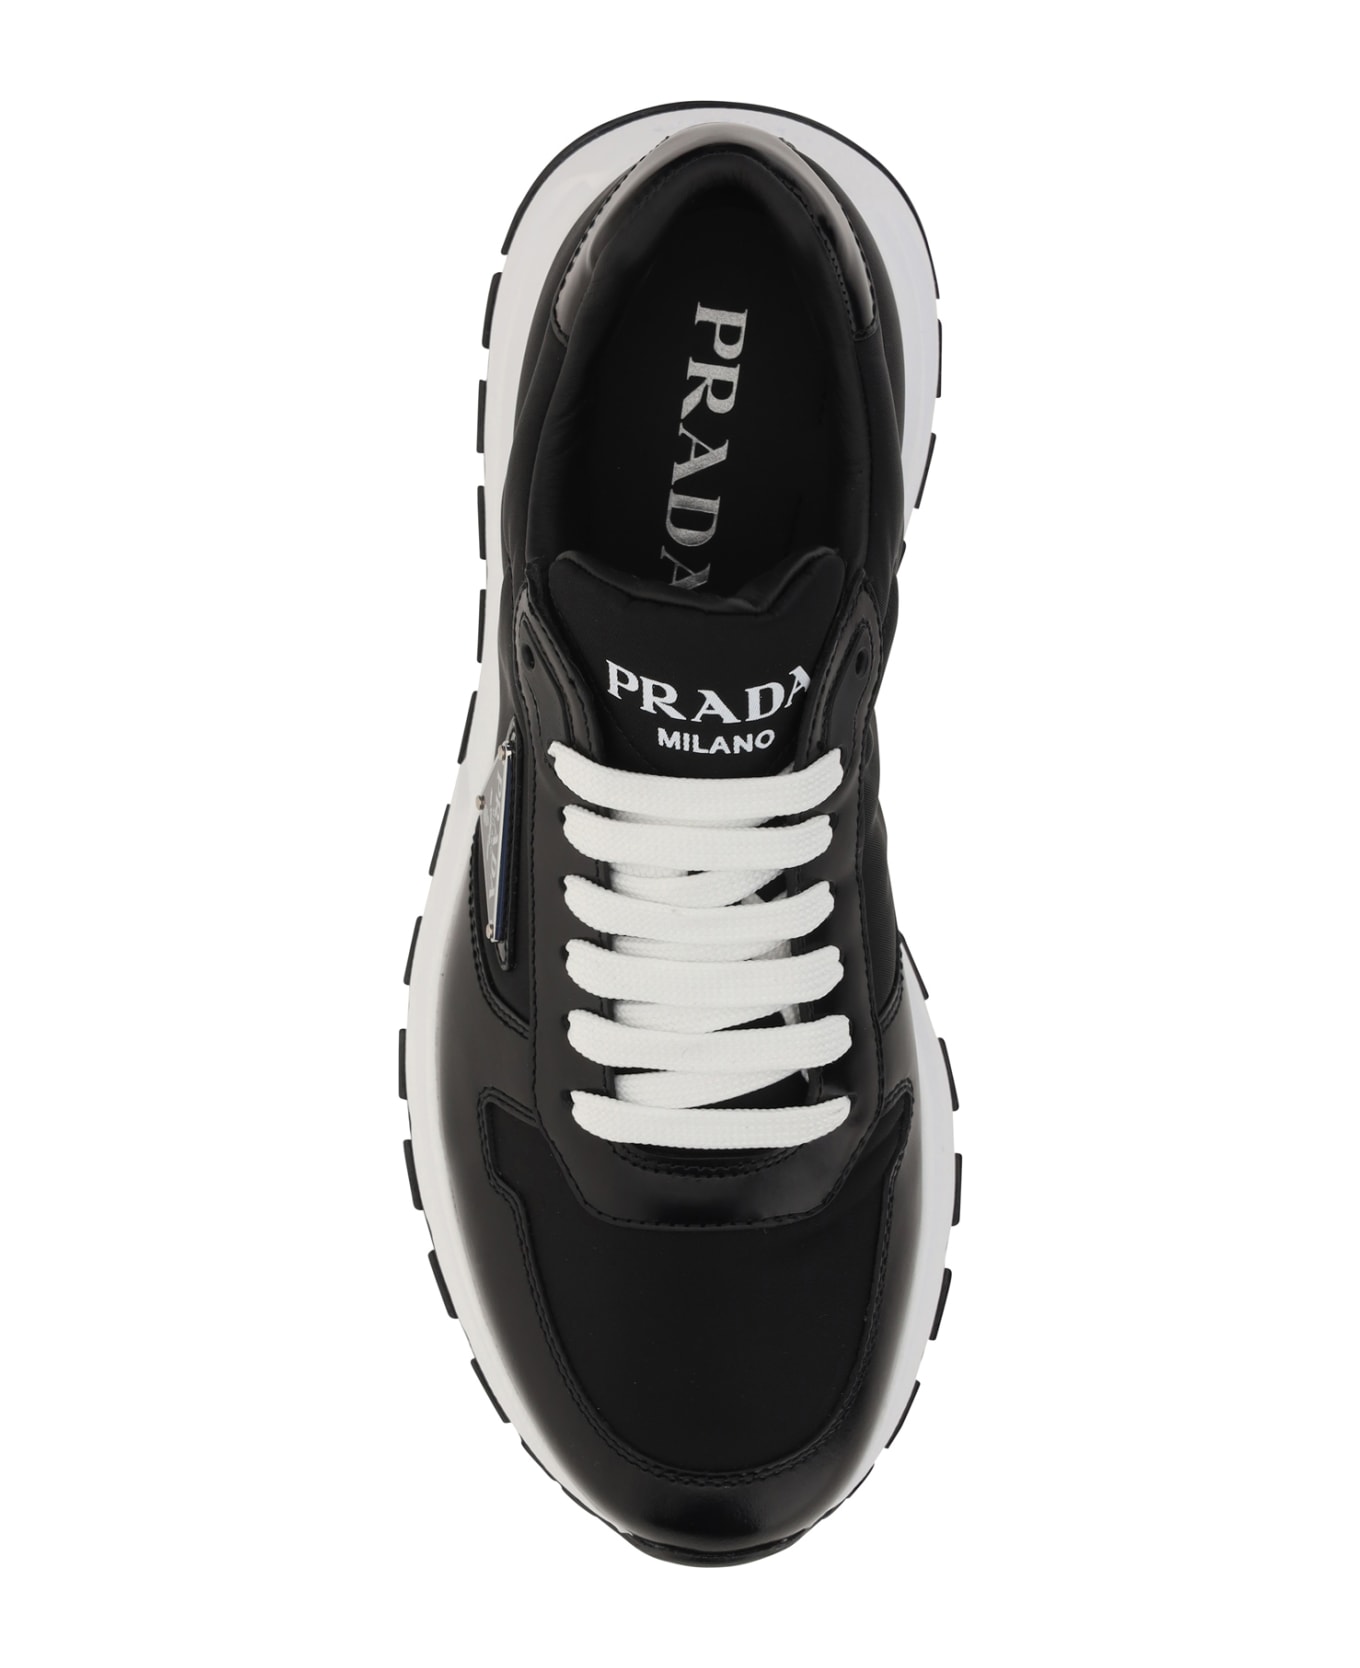 Prada Prax 01 Sneakers スニーカー